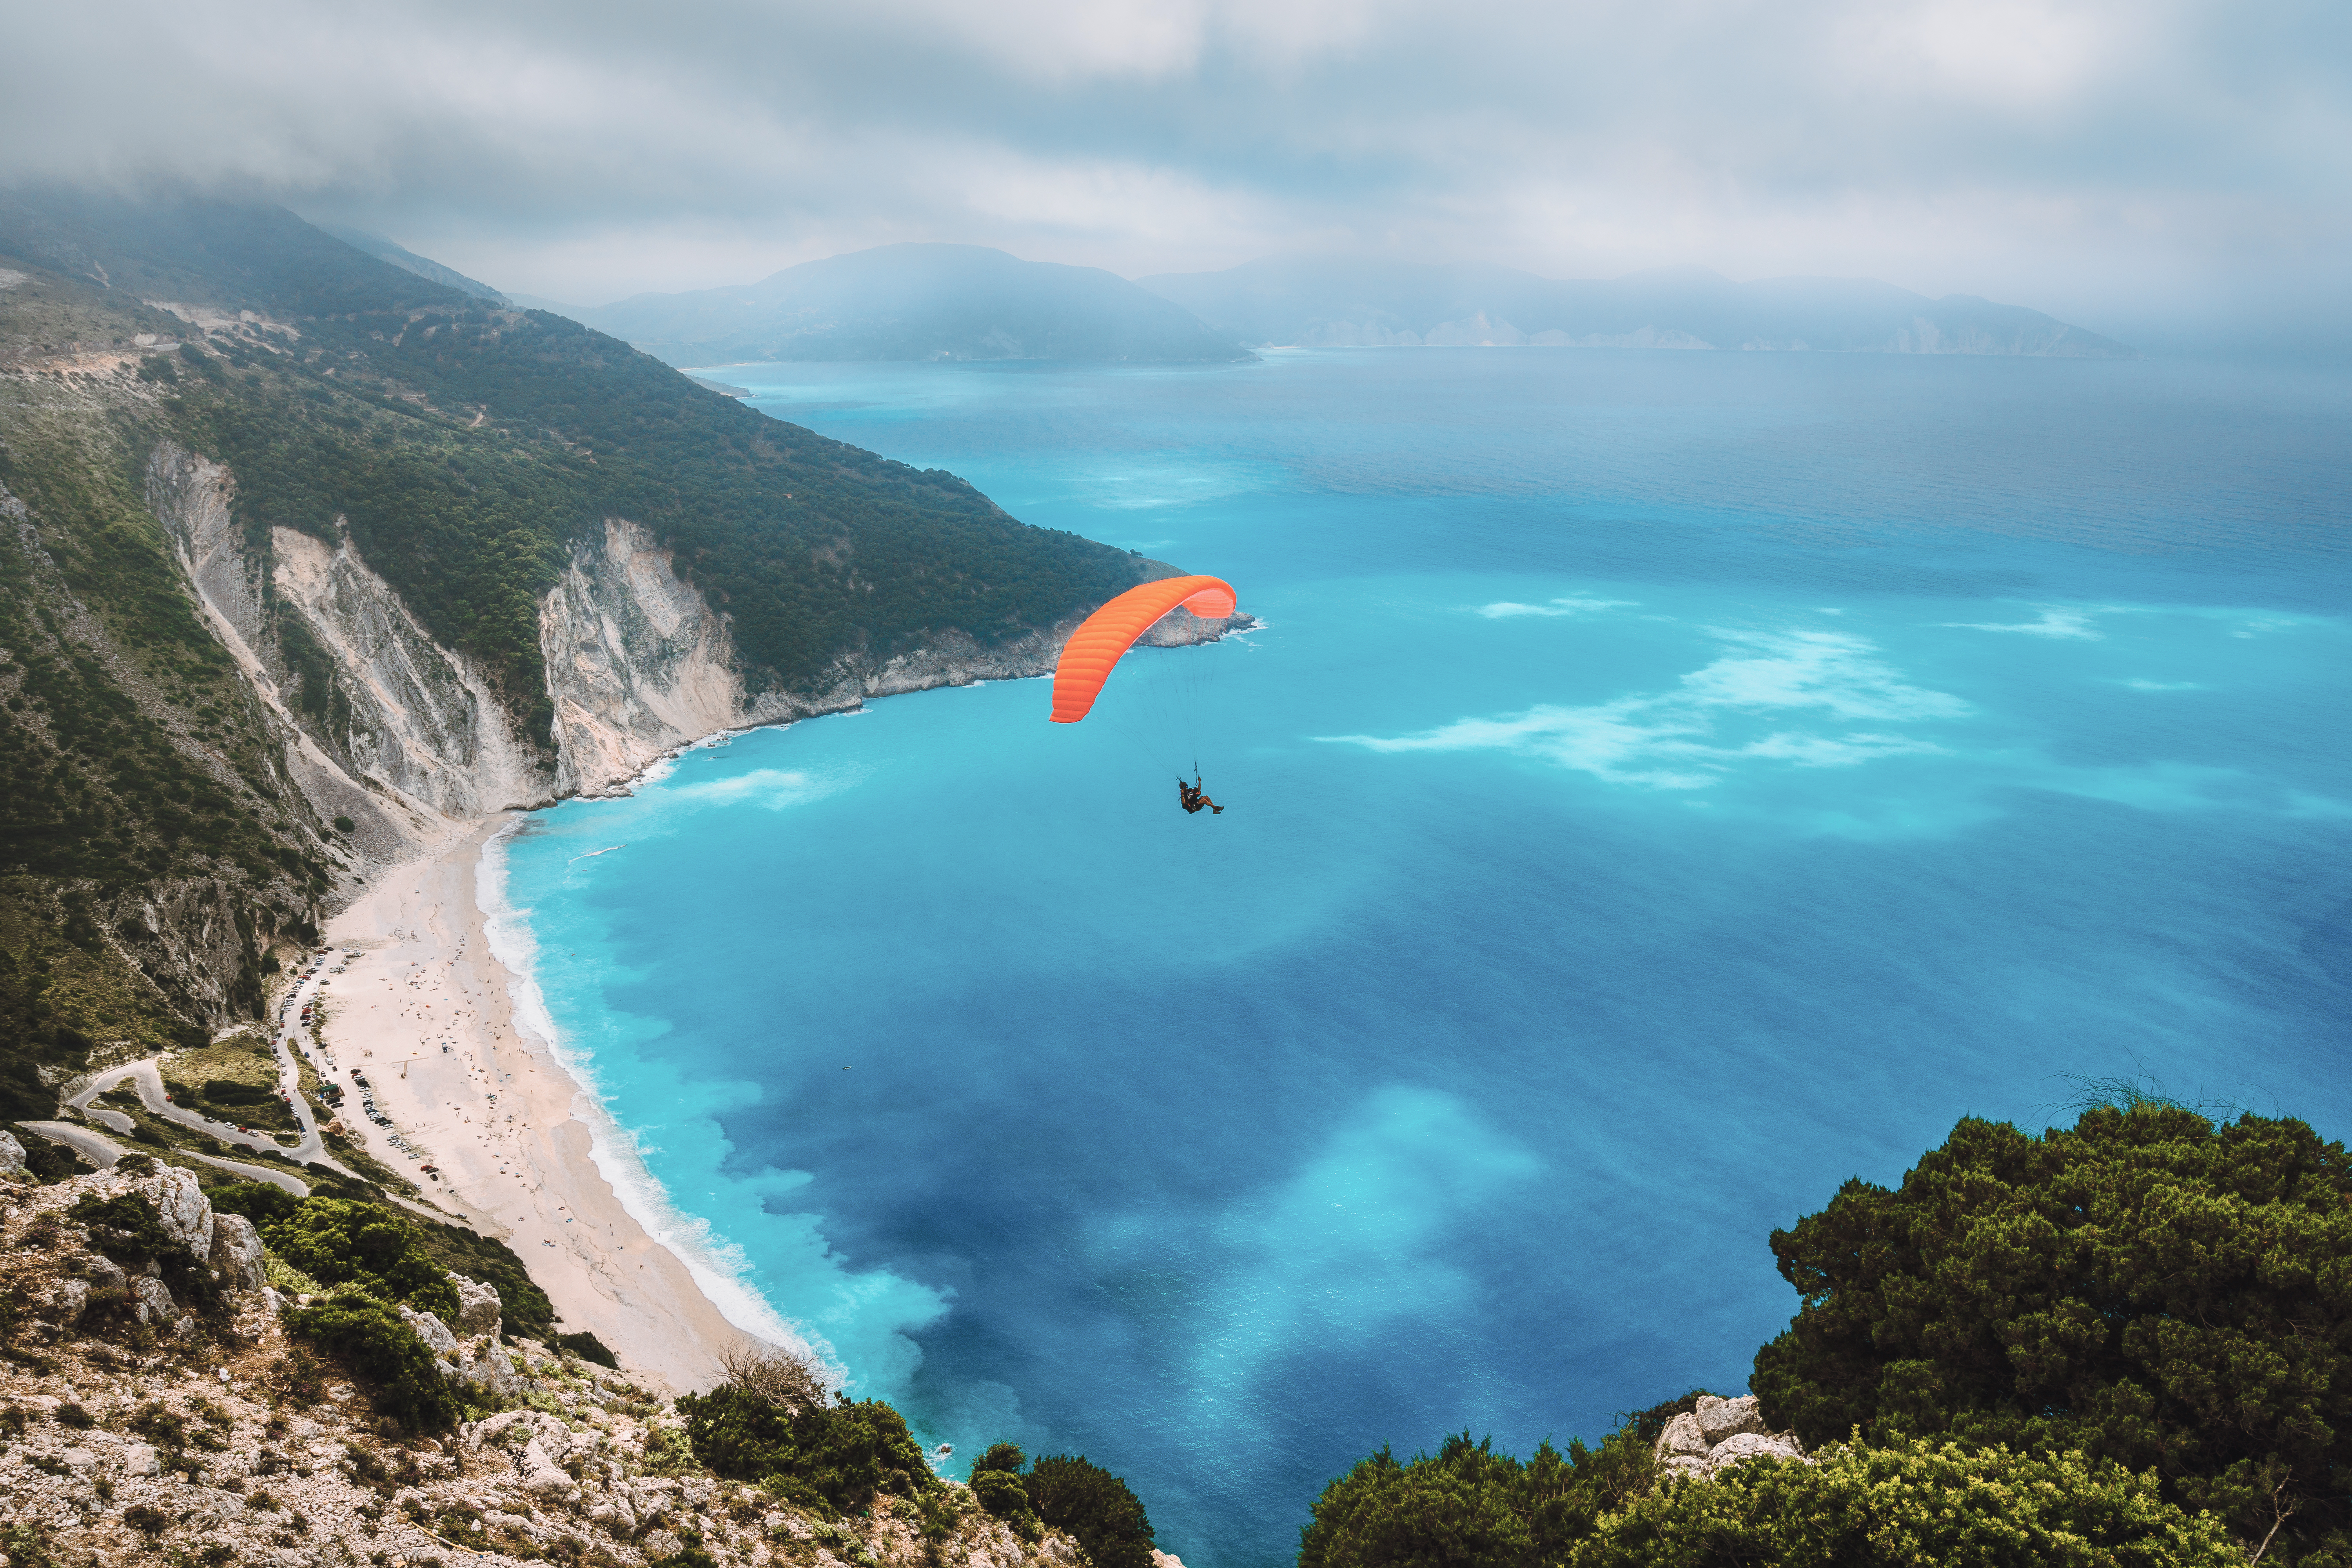 Tandem Paragliding at Myrtos beach